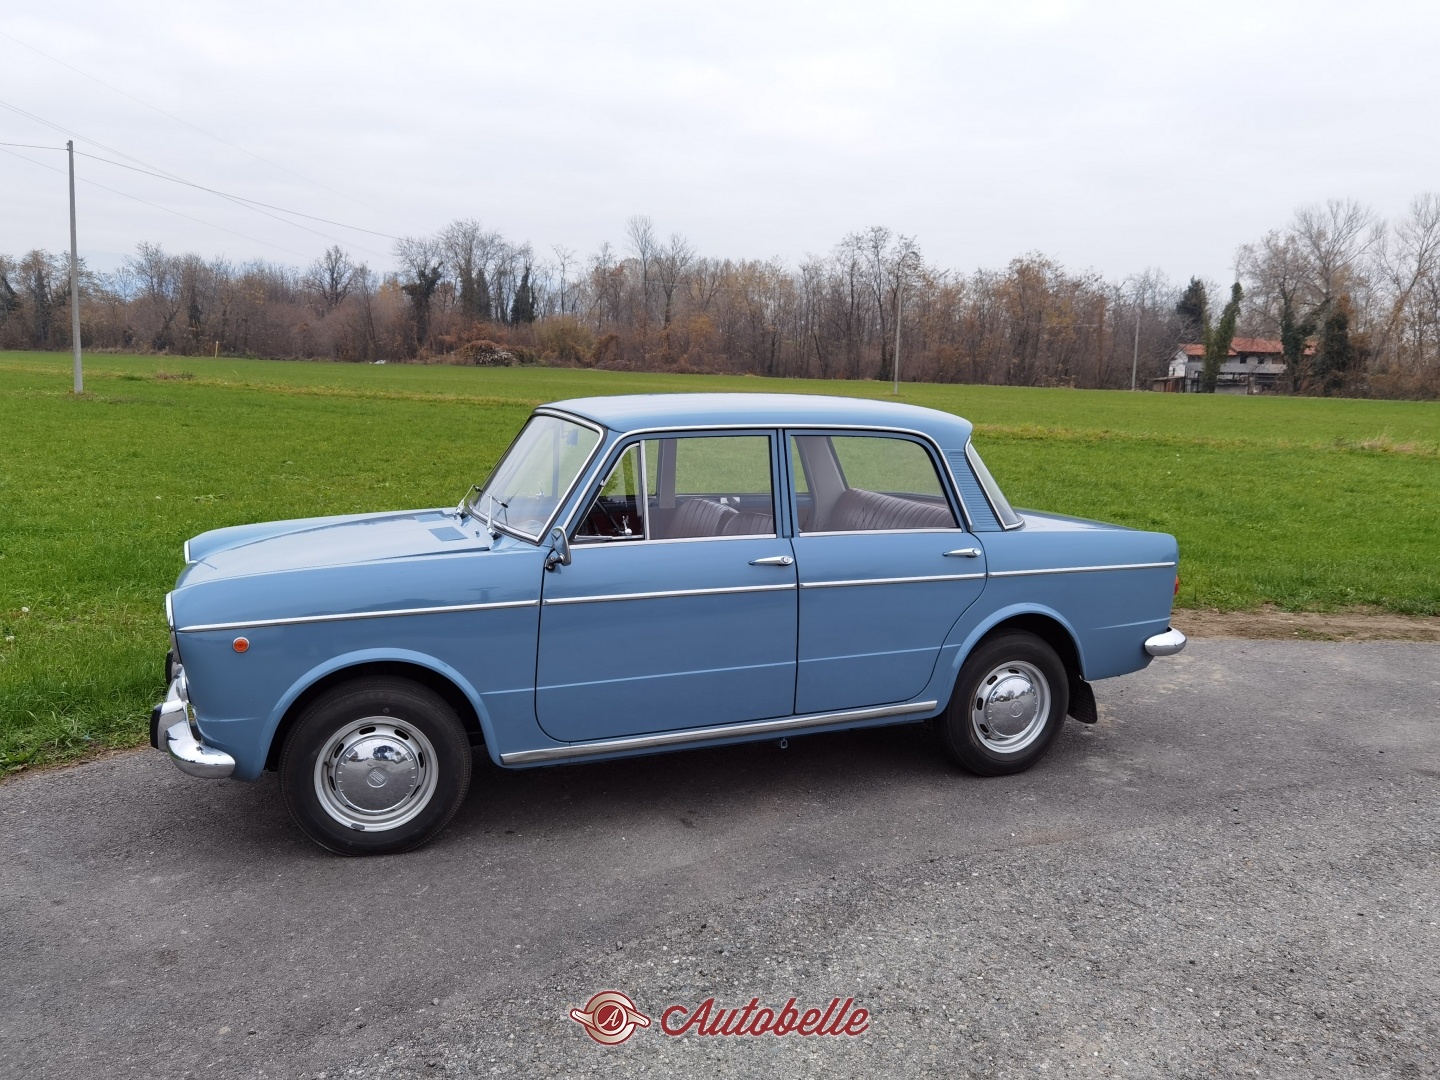 For sale Fiat 1100r anno 1968